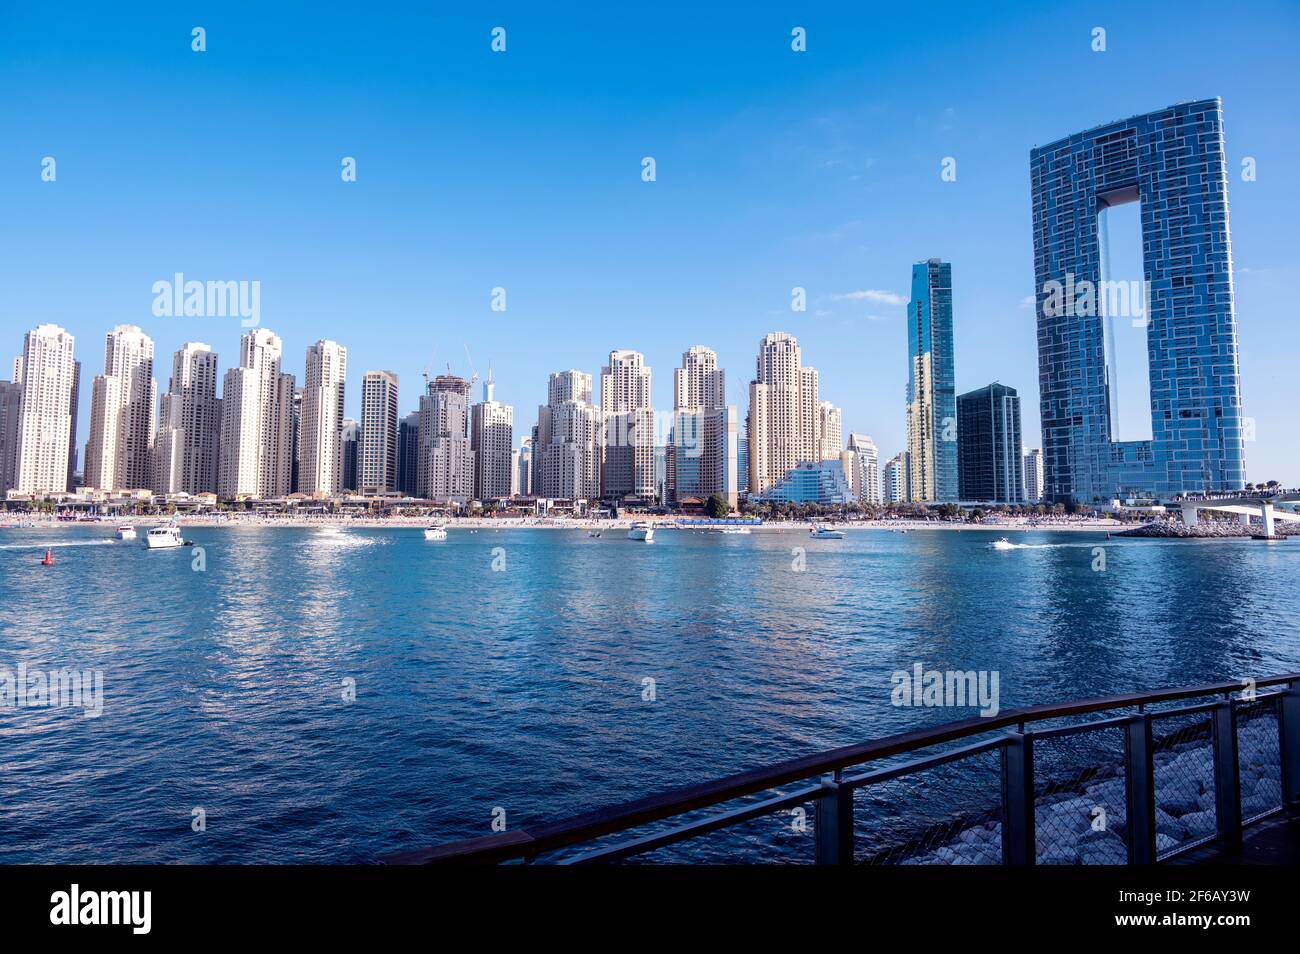 Vue panoramique sur les bateaux de croisière et les gratte-ciels de la marina de dubaï capturé à l'Ain Dubai dans les îles Blue Water, Dubaï, Émirats Arabes Unis. Banque D'Images